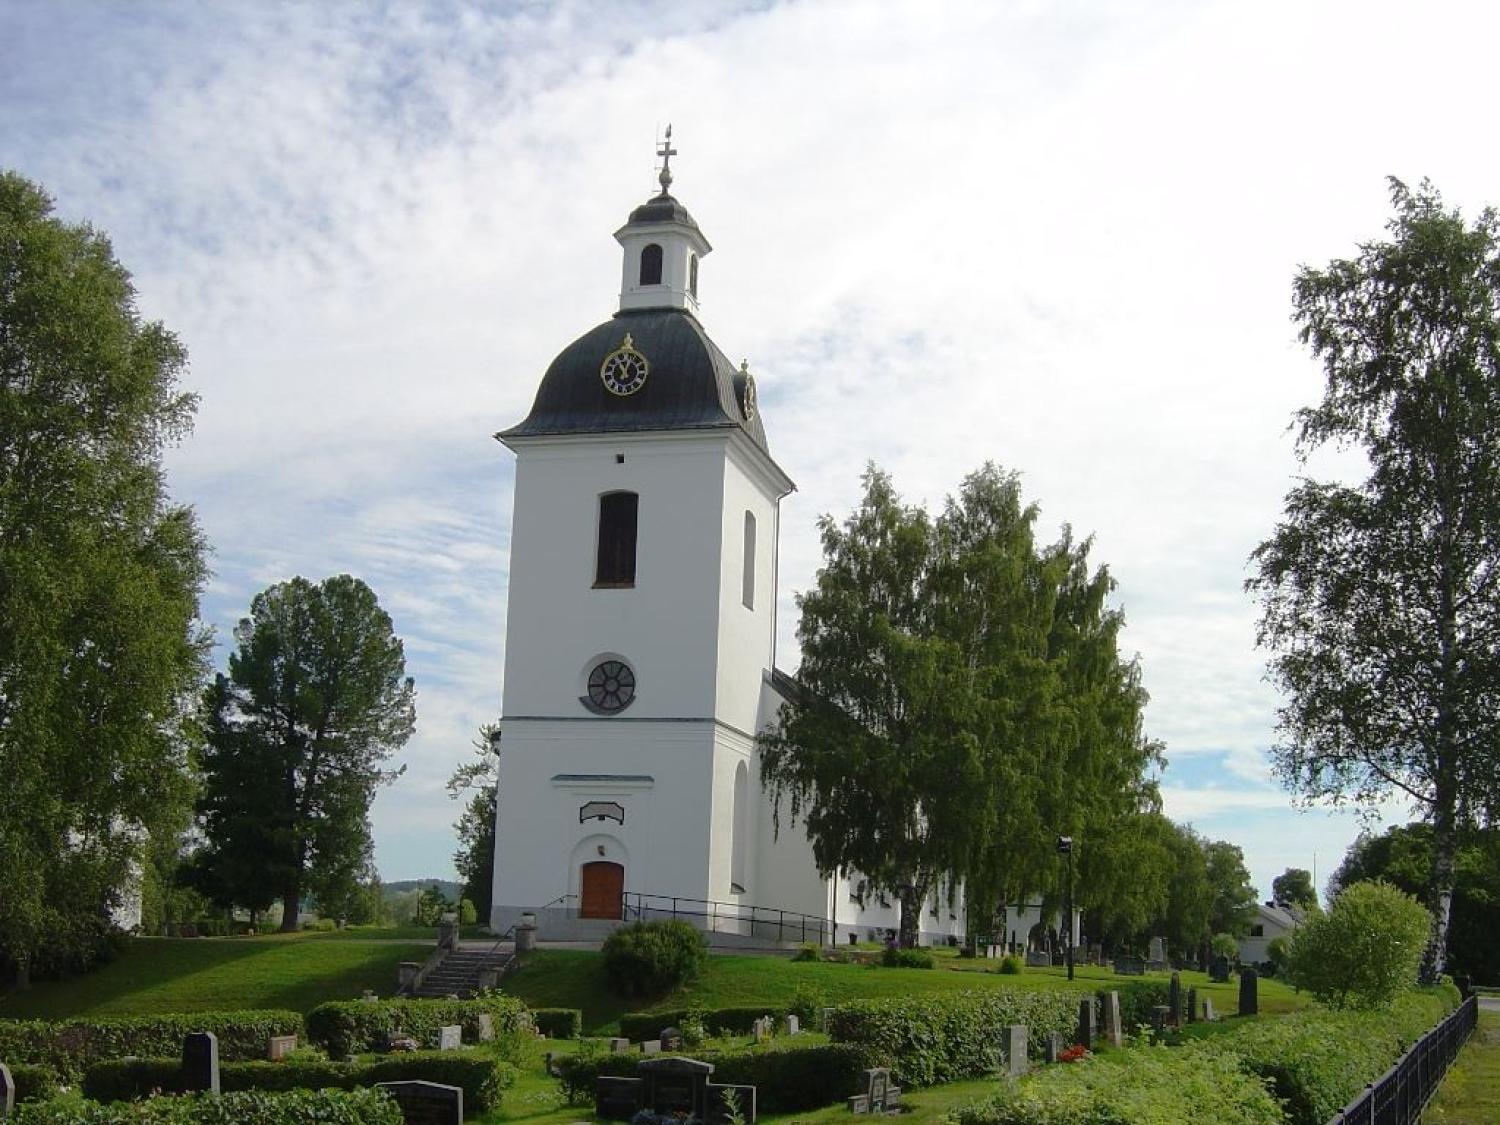 gnarps kyrka, svenska kyrkan